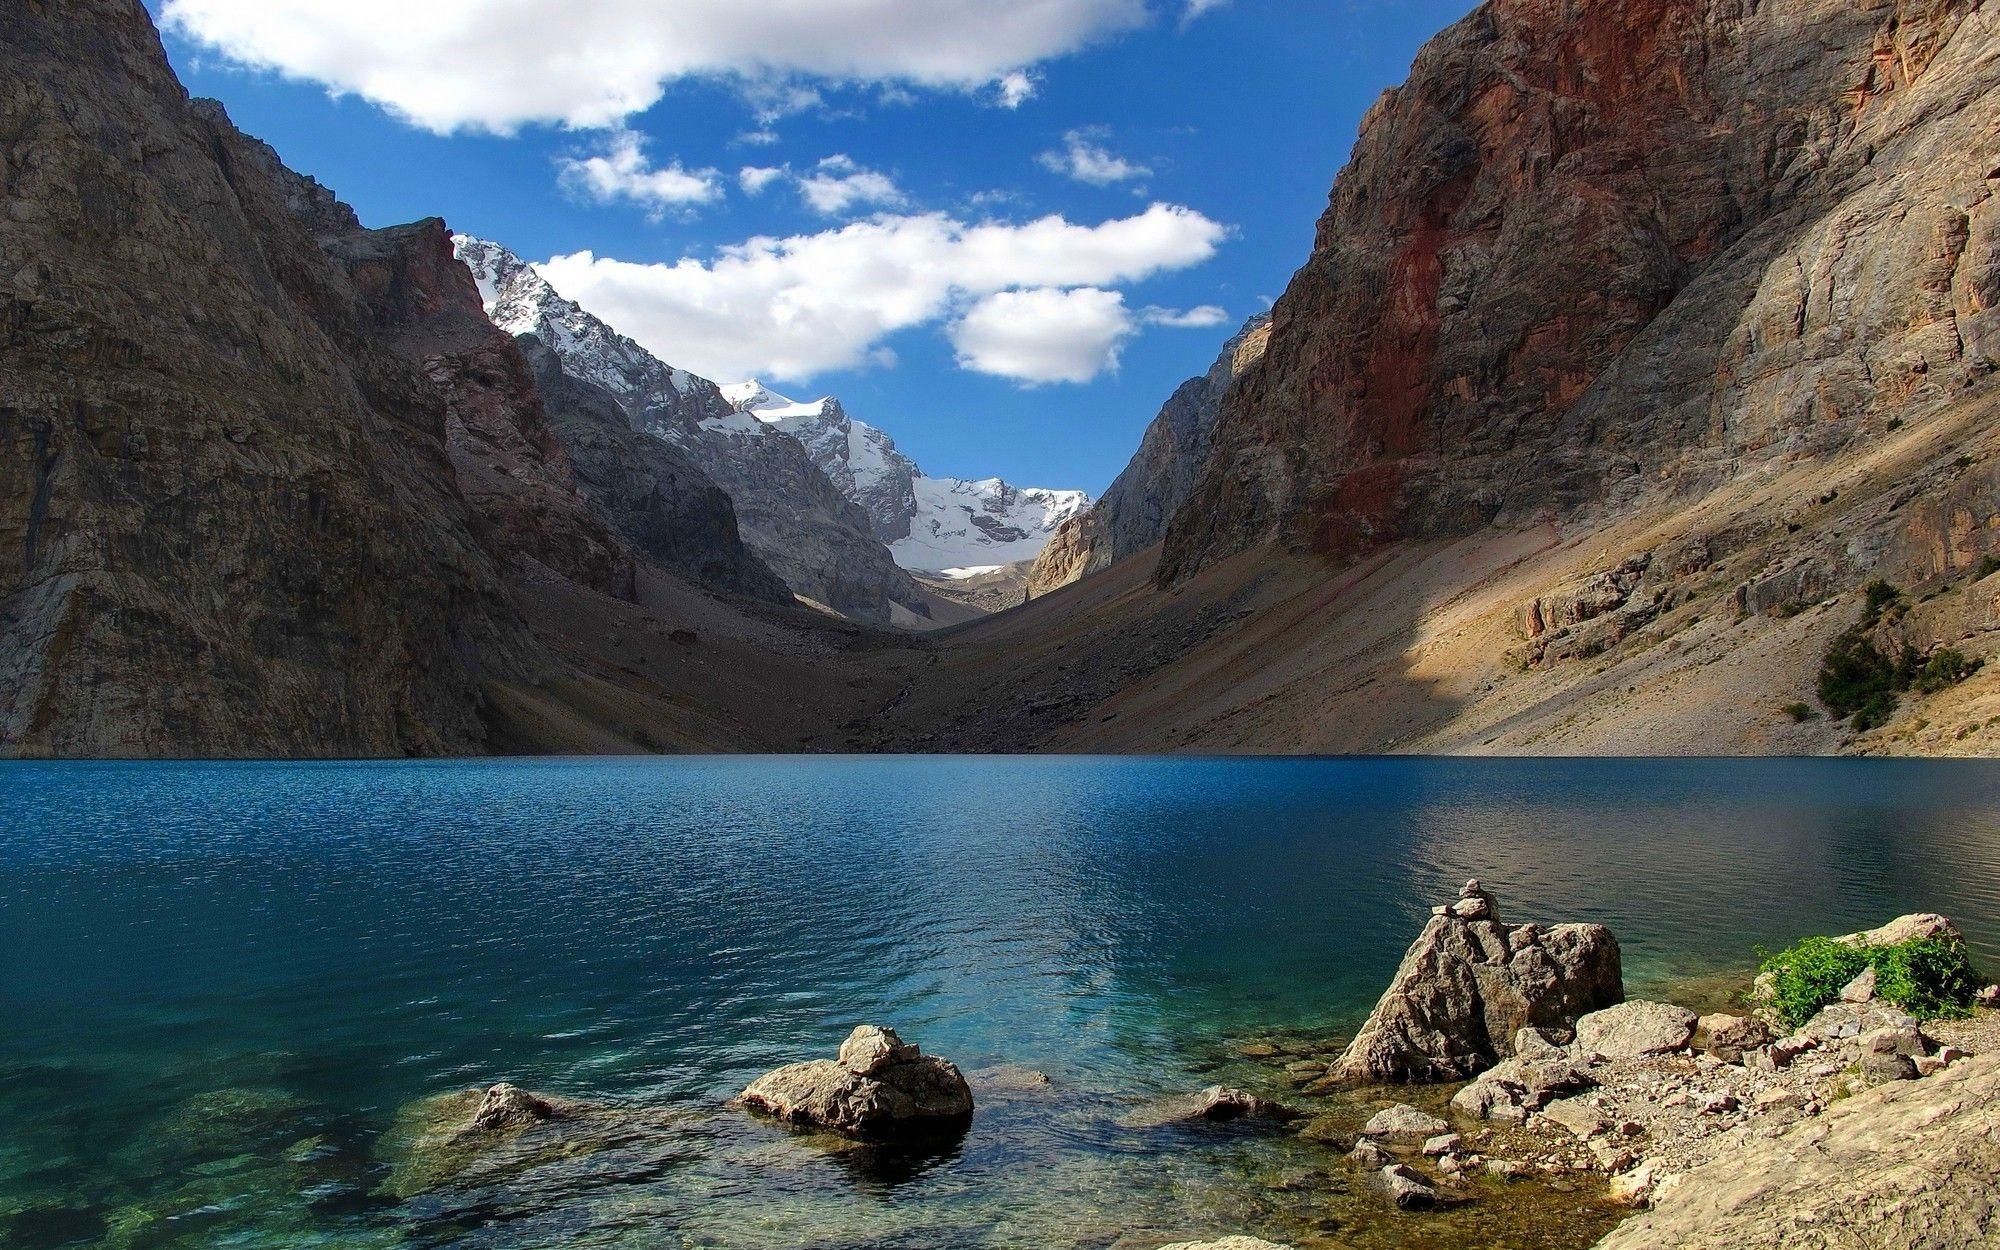 Tajikistan wallpapers, Scenic landscapes, Breathtaking beauty, Desktop backgrounds, 2000x1250 HD Desktop